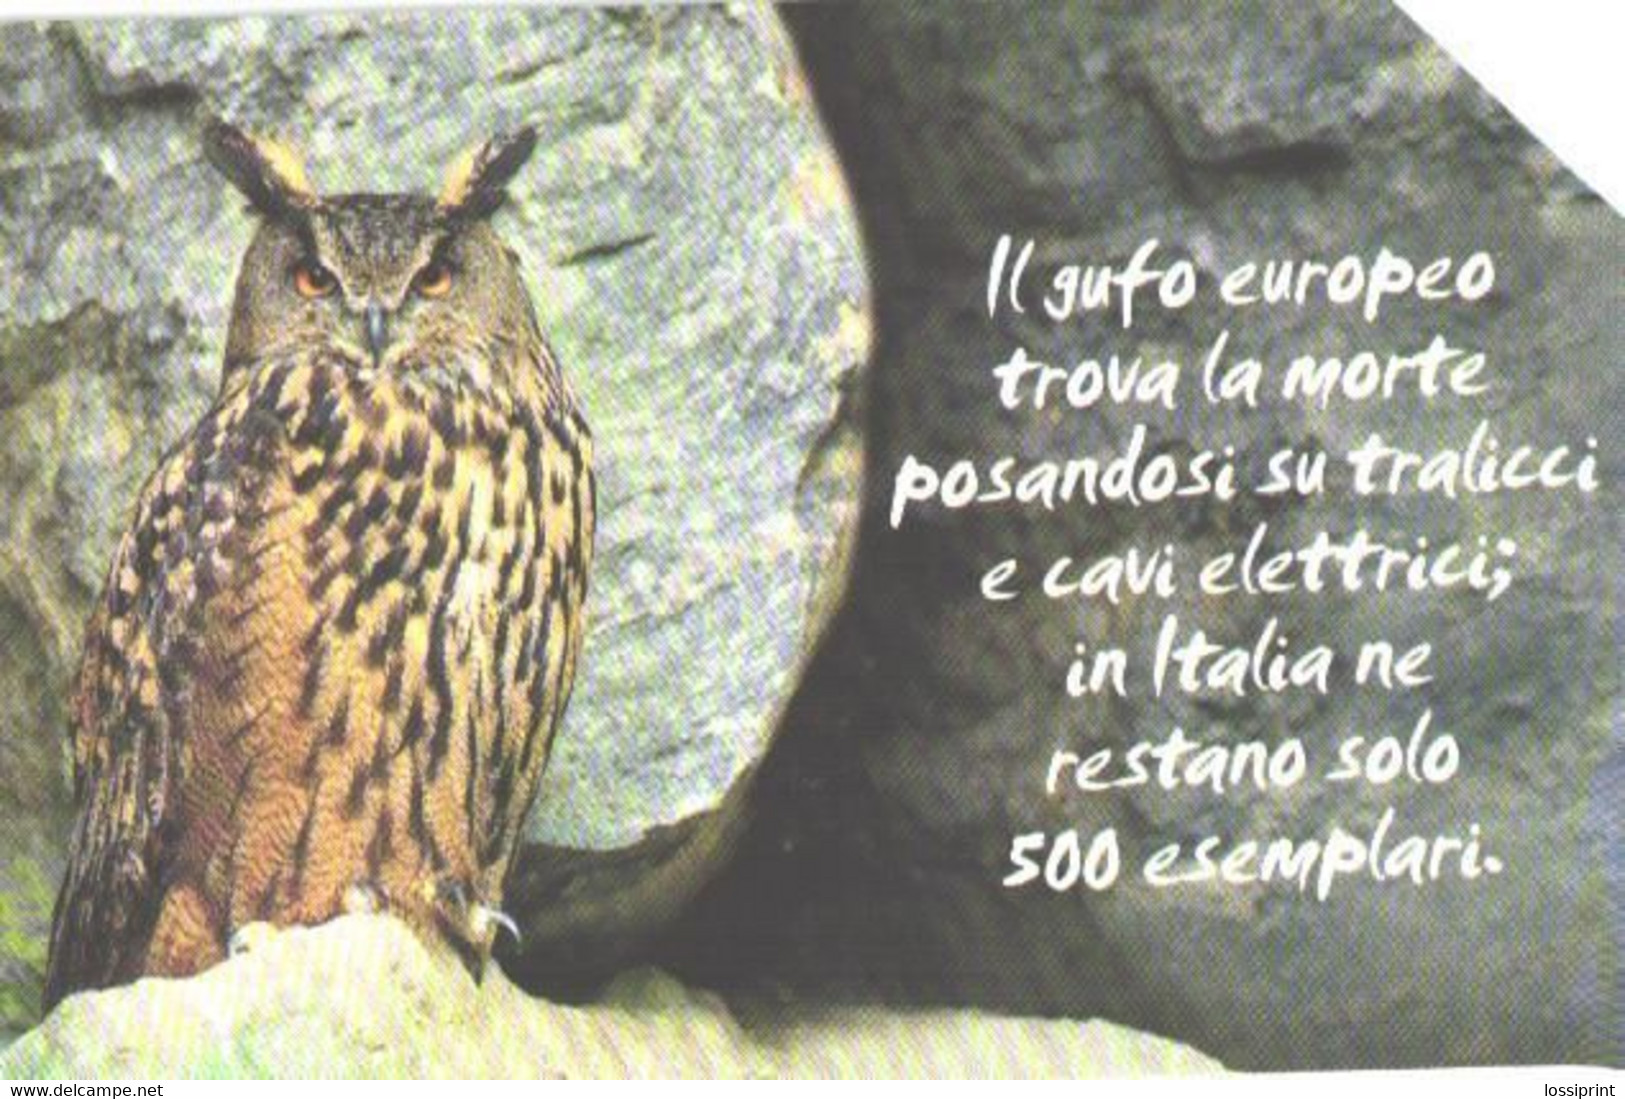 Italy:Used Phonecard, Telecom Italia, 10000 Lire, Owl - Publiques Thématiques